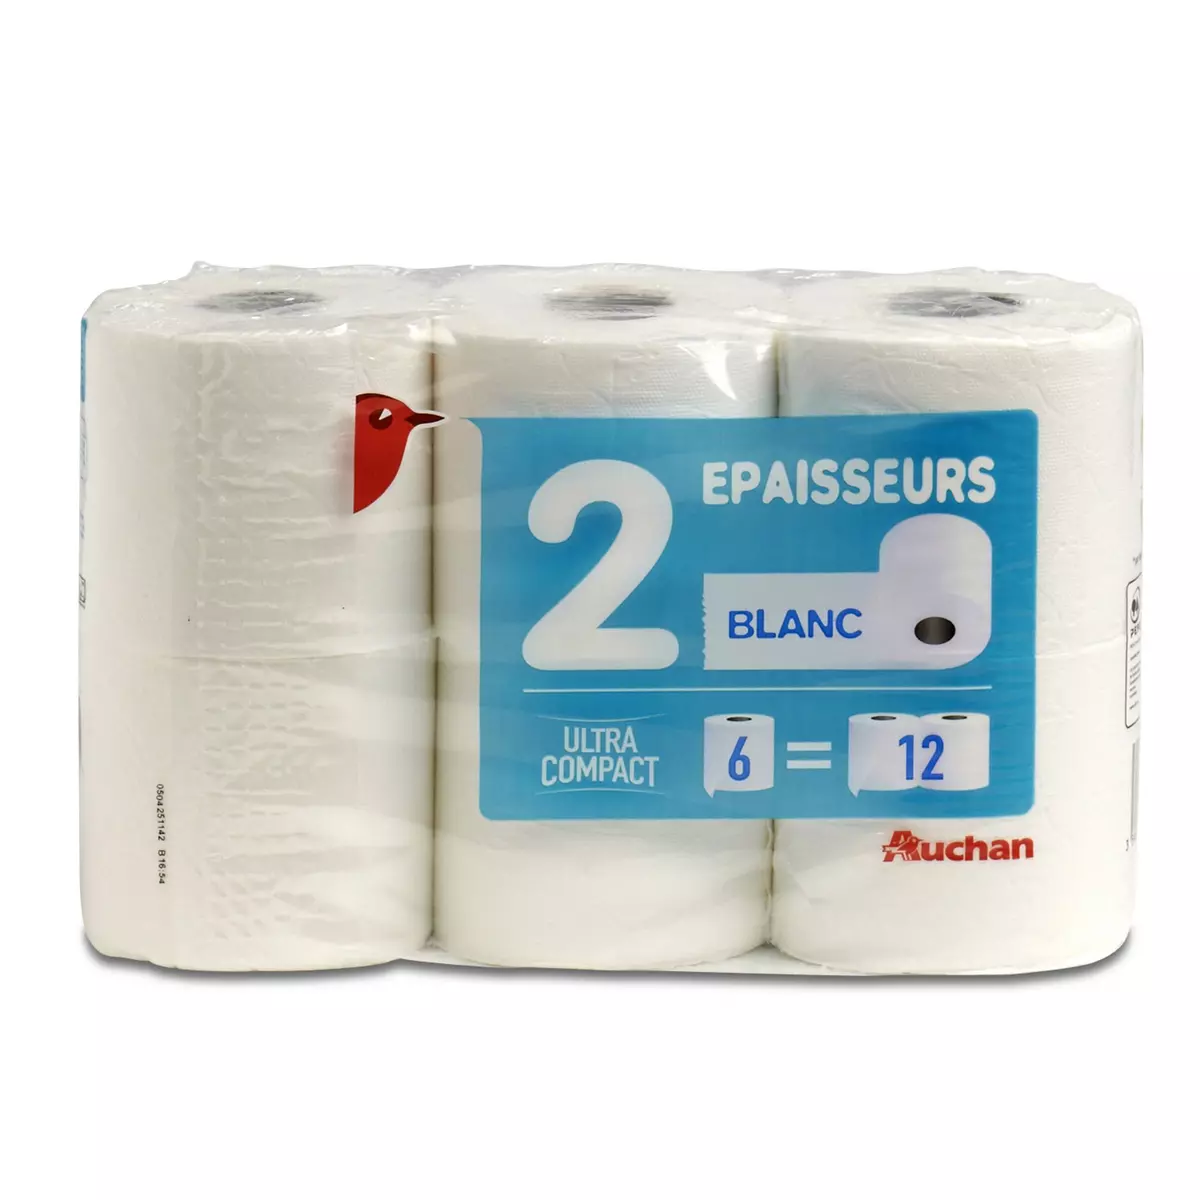 AUCHAN Papier toilette blanc ultra compact 2 épaisseurs = 12 standards 6 rouleaux